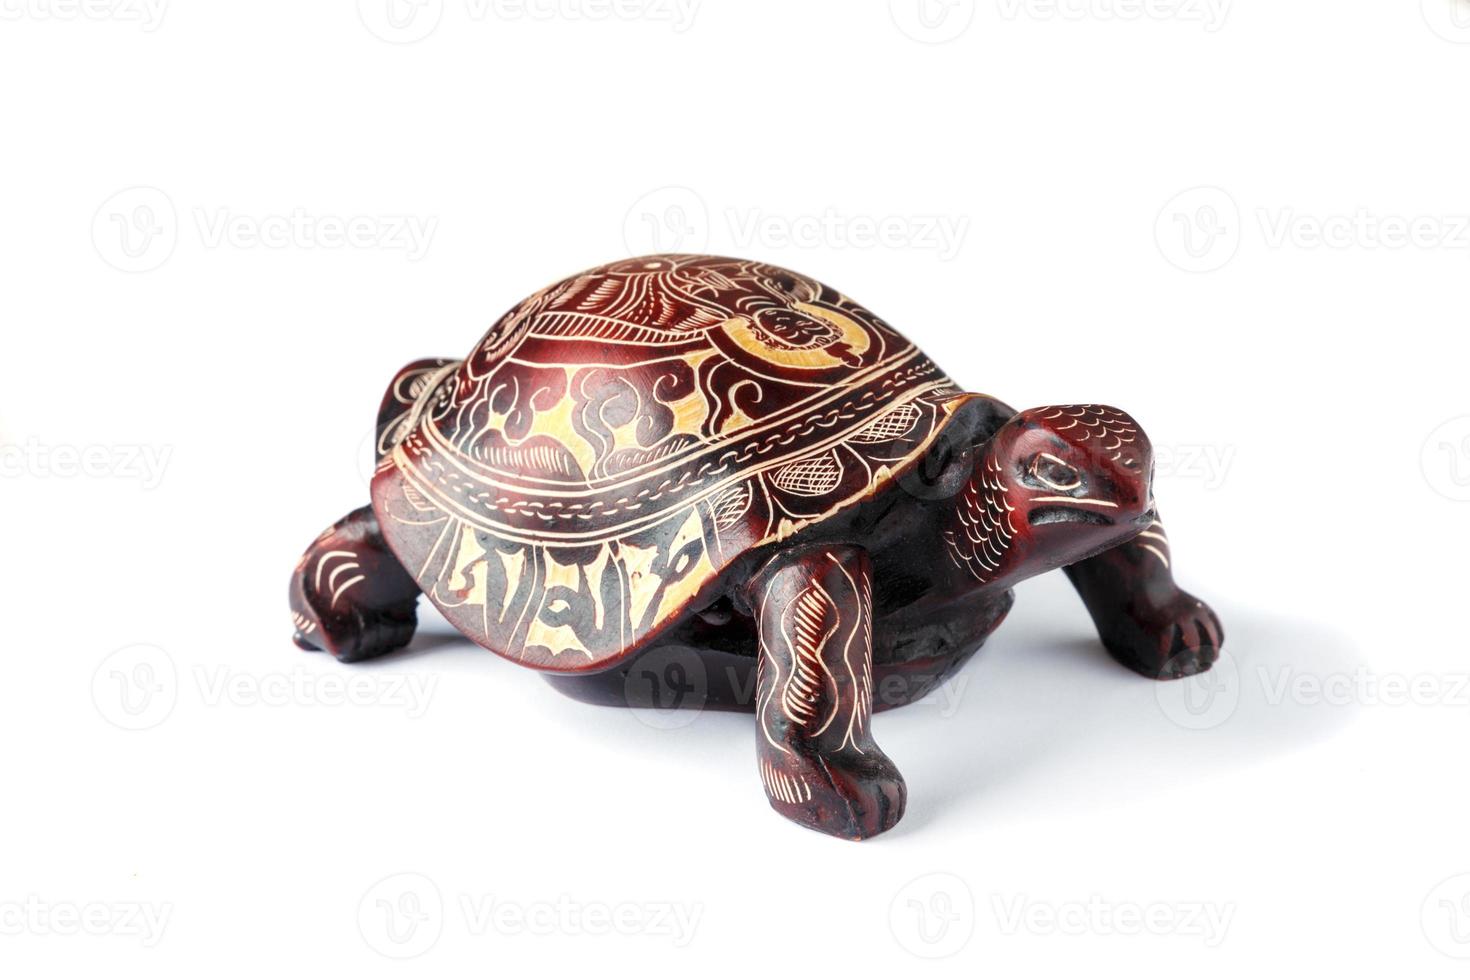 tortue avec l'image du bouddha sur la coquille, fond blanc. photo